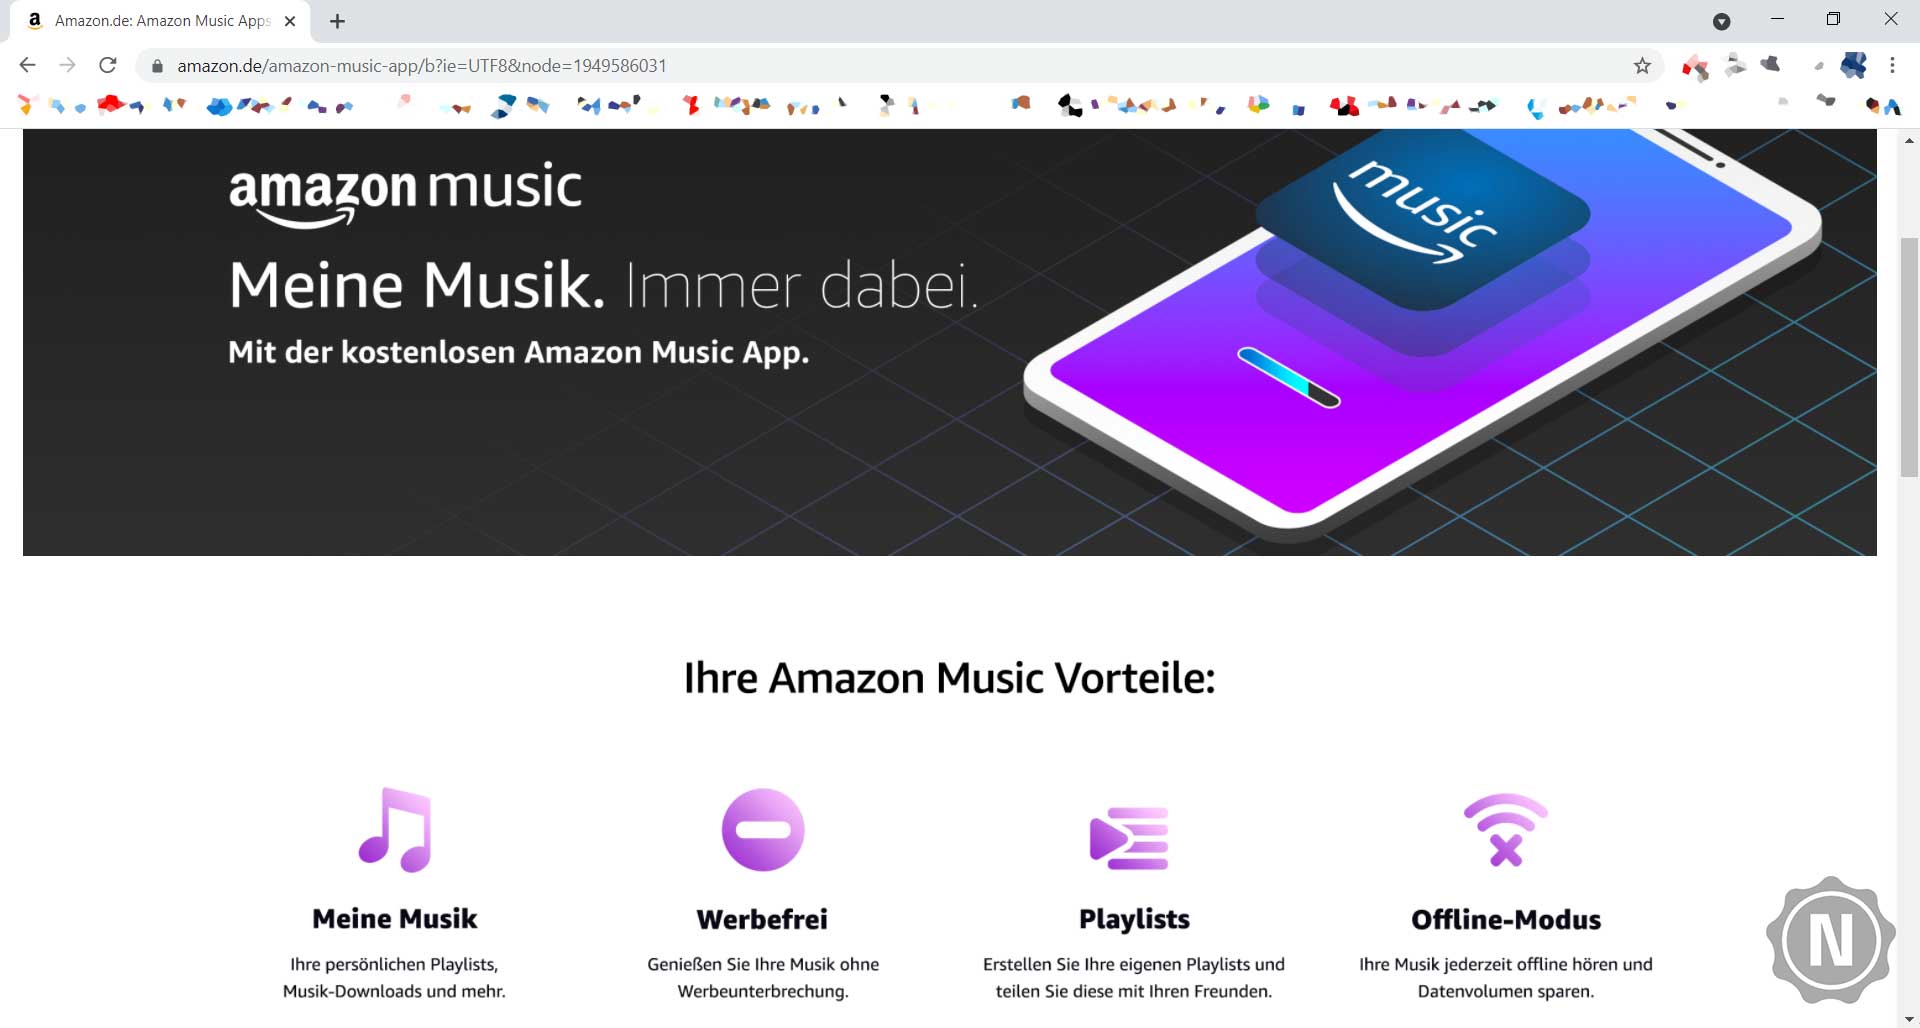 Millionen von Songs in hoher Qualität – Amazon Music